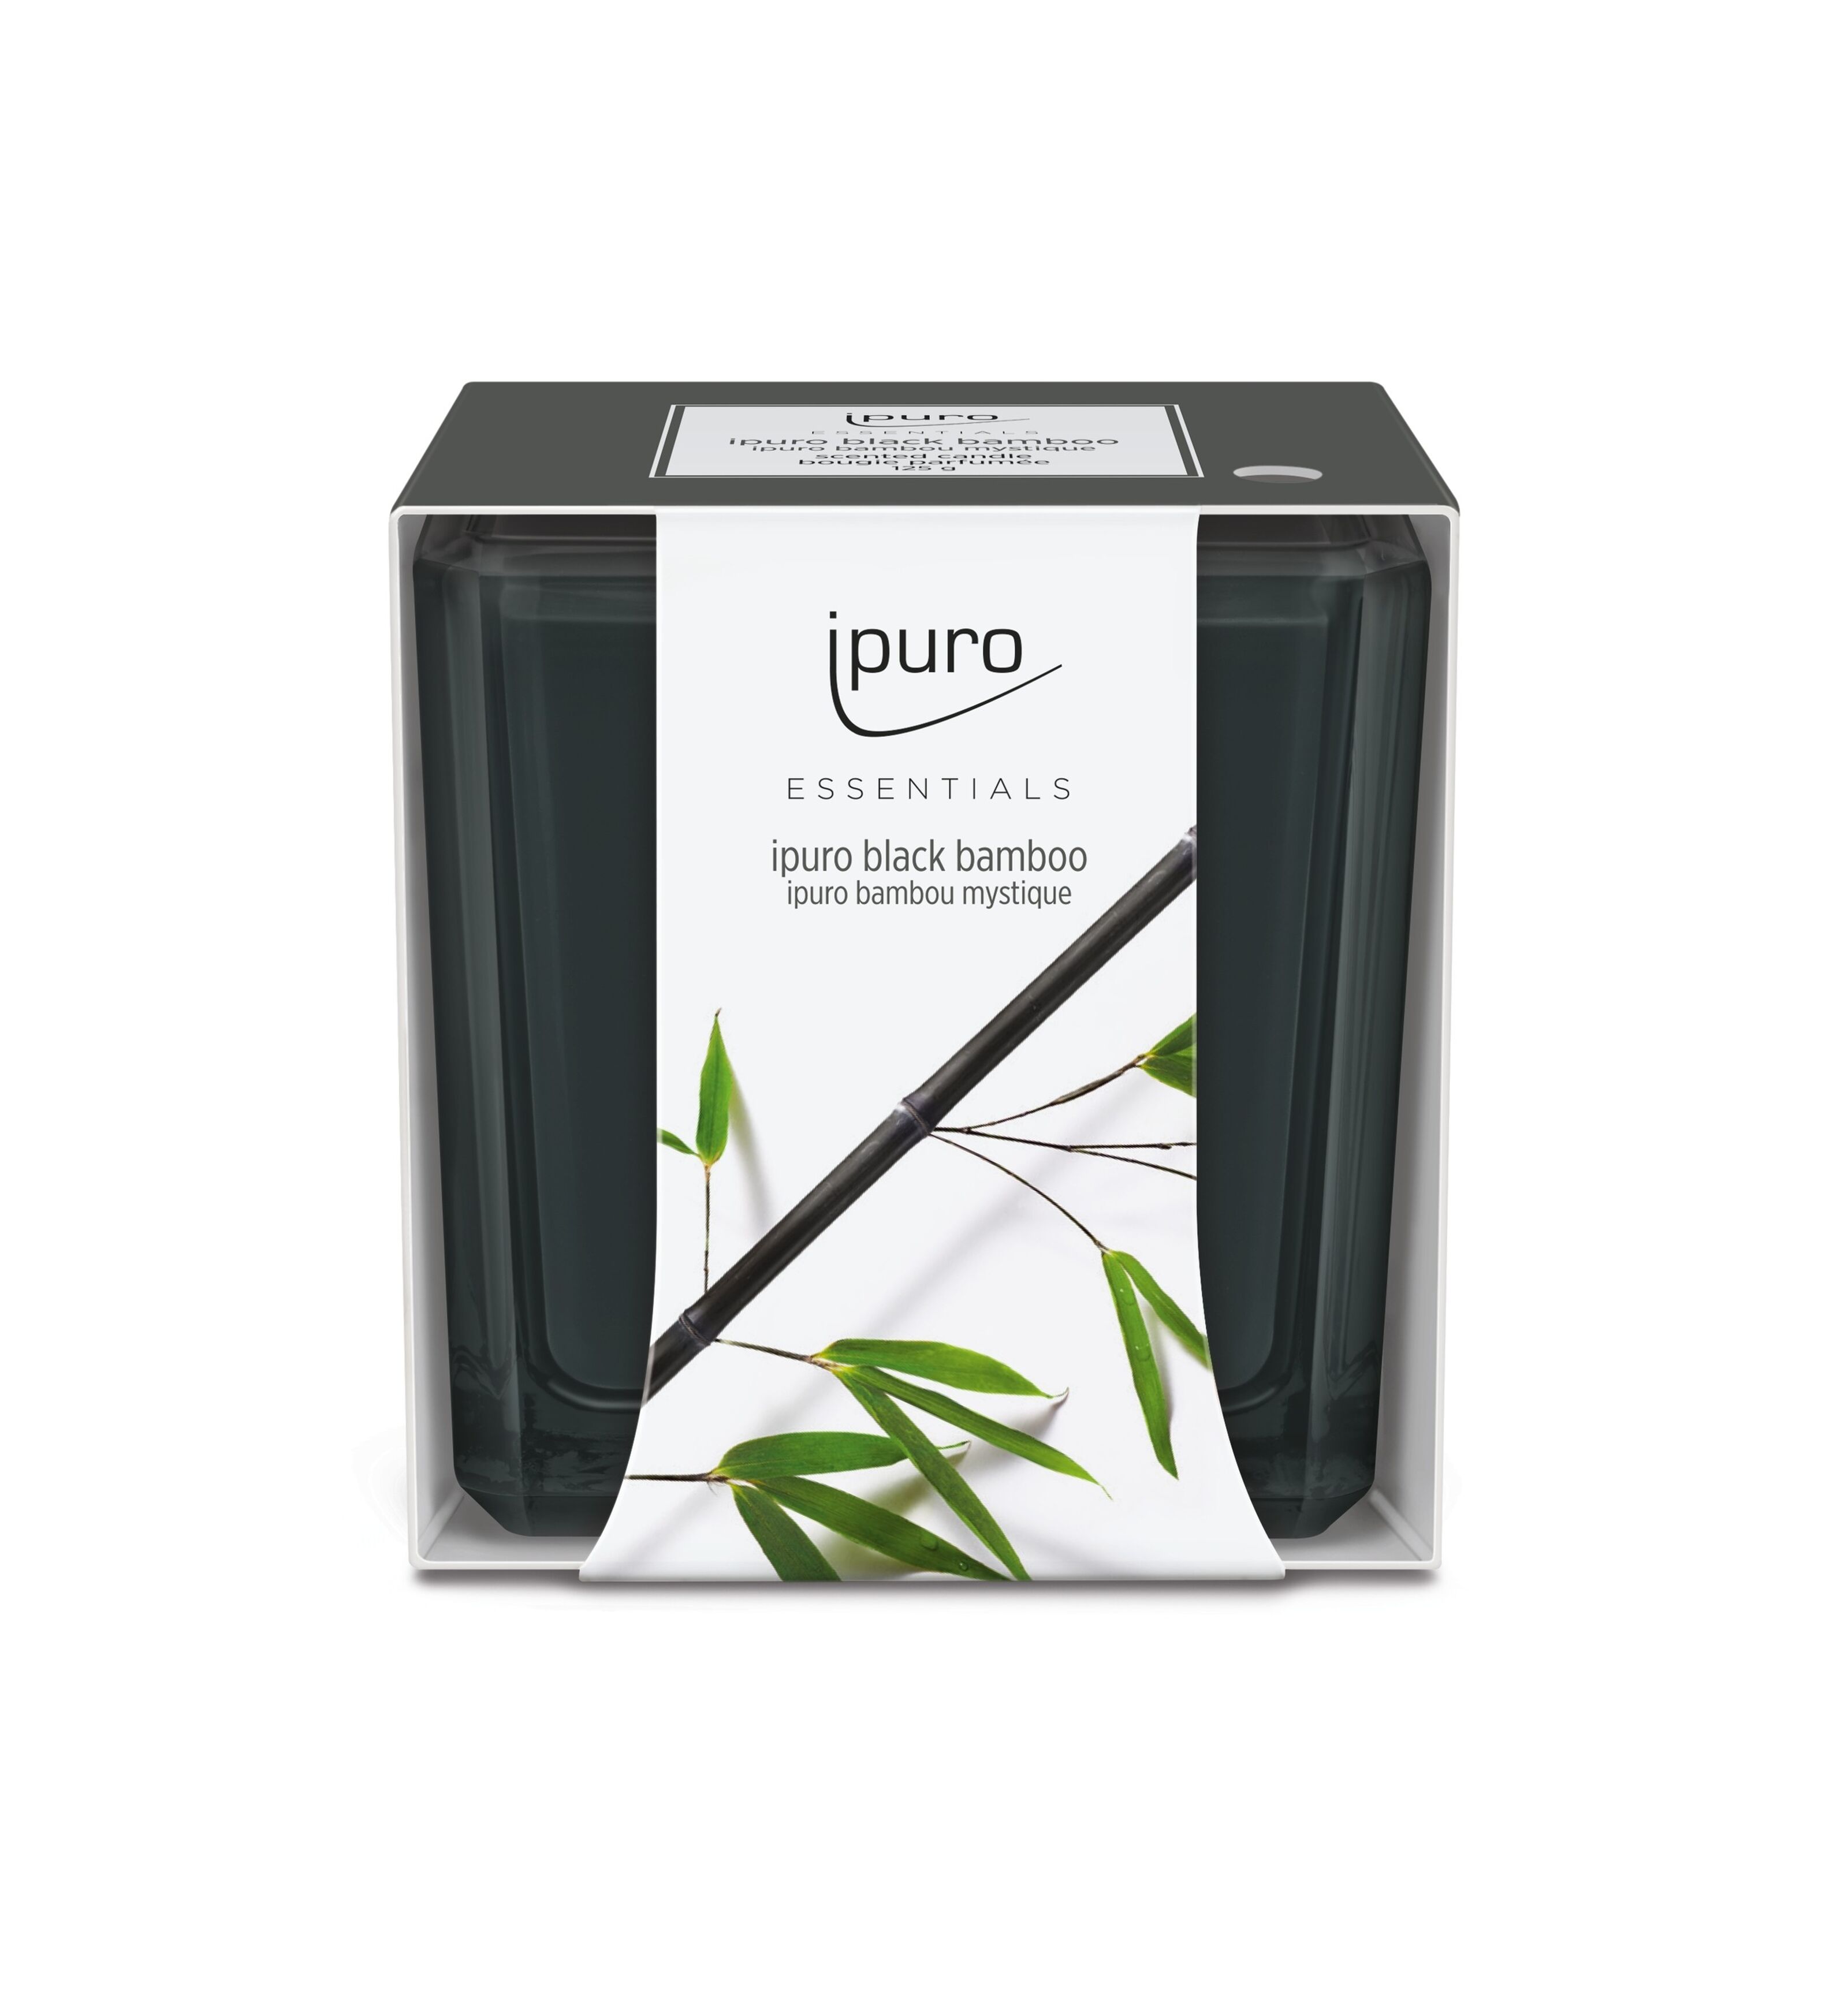 ipuro Essentials Black Bamboo Autoduft